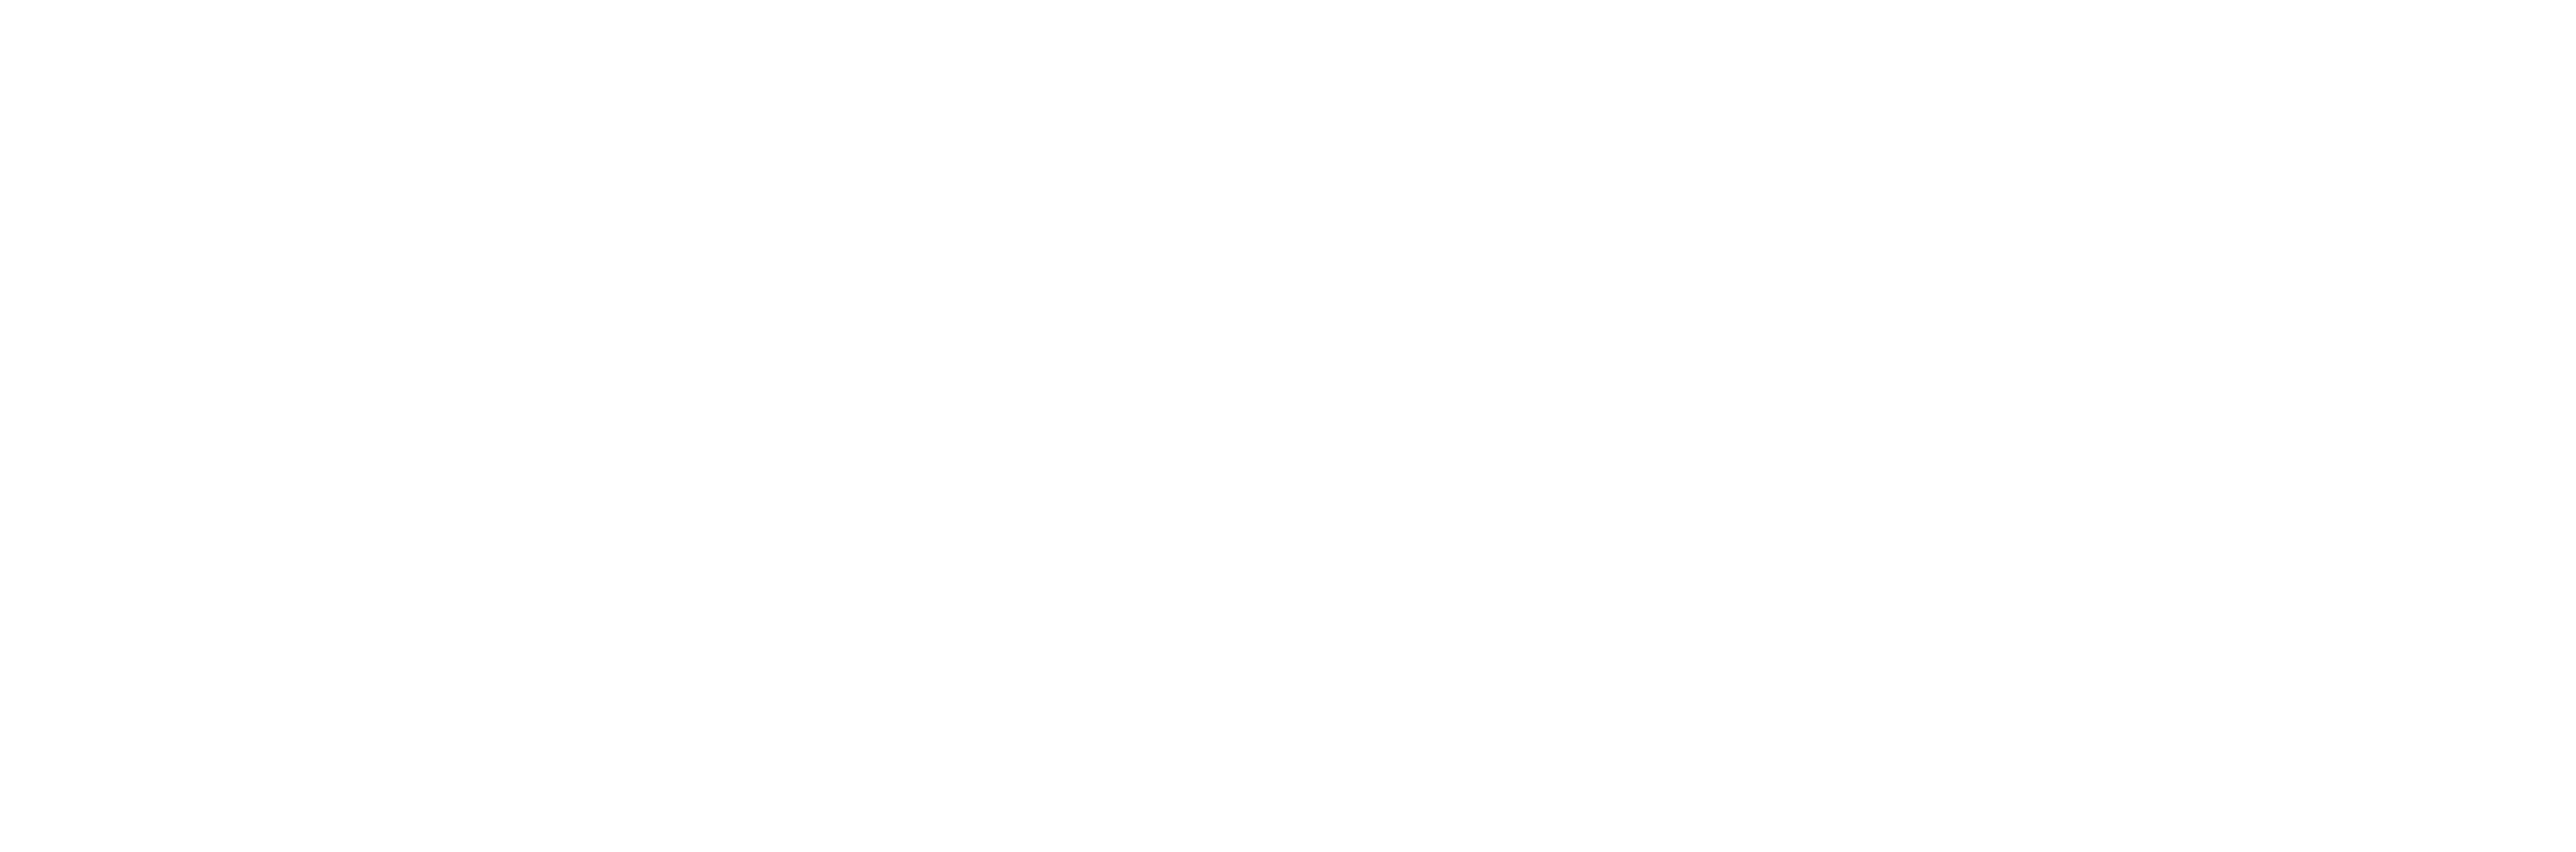 le logo Bricklead en blanc